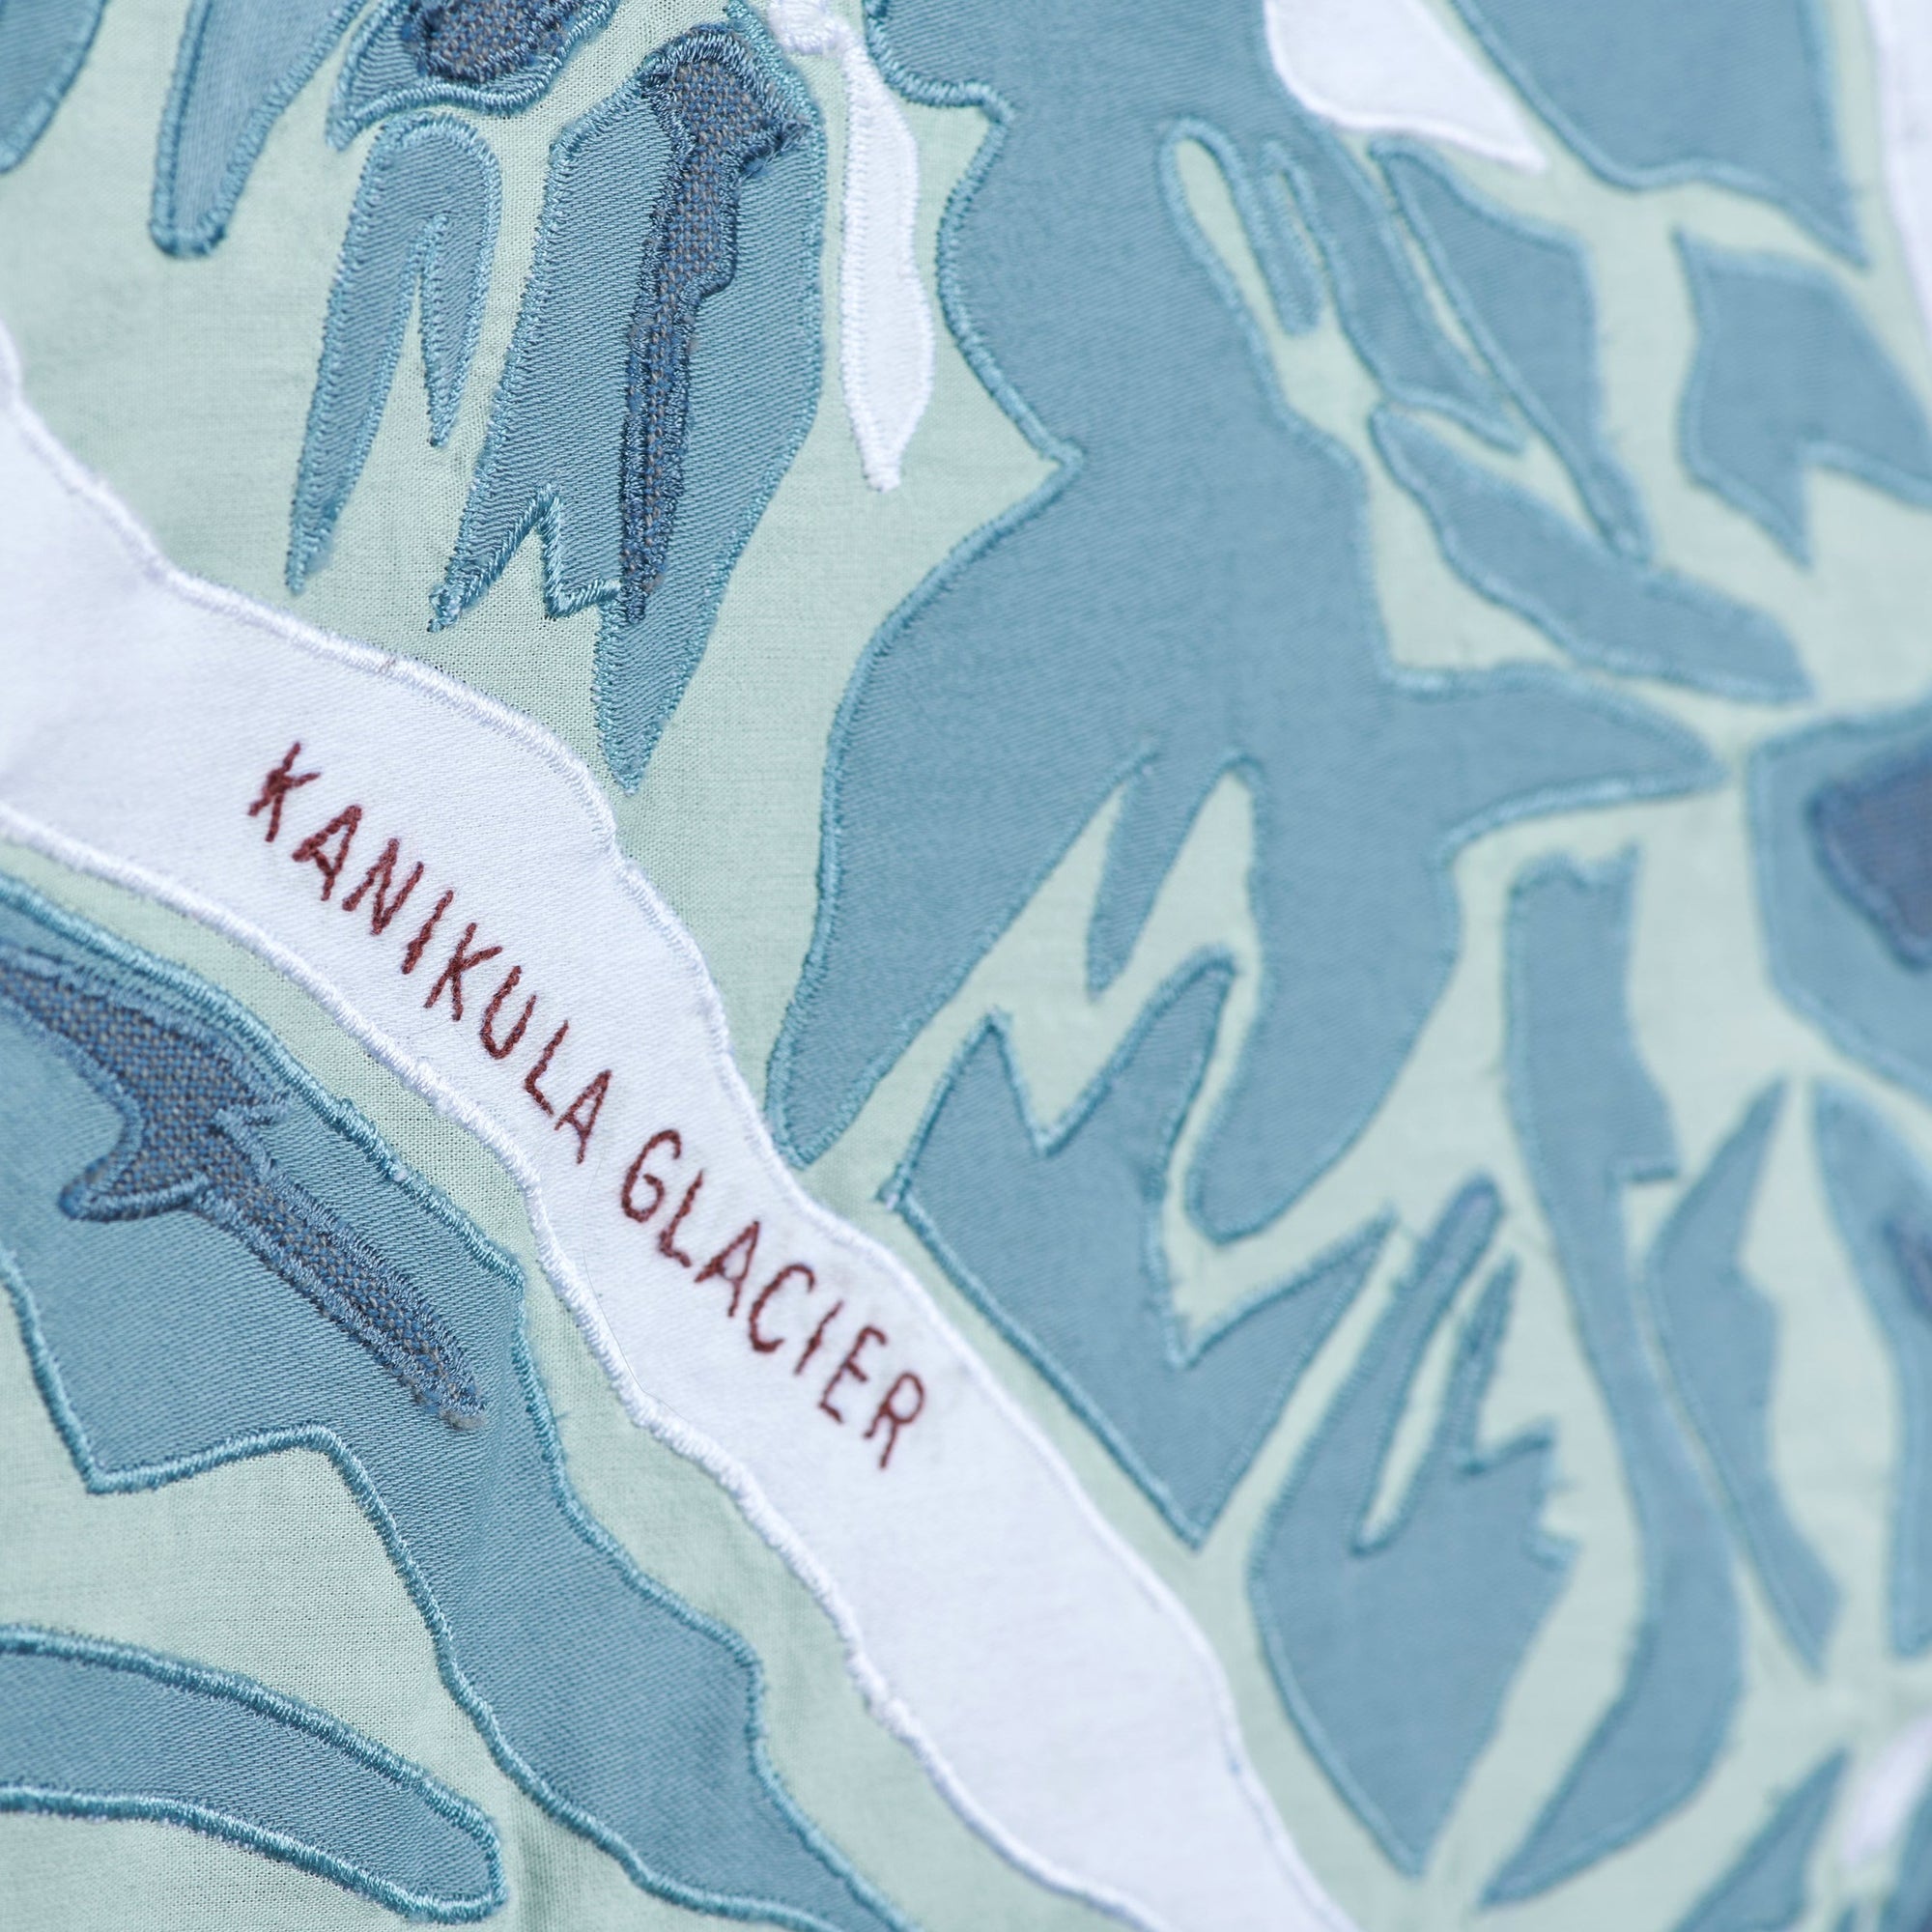 Detail shot of Denali Mountain Portrait showing glaciers - Haptic Lab